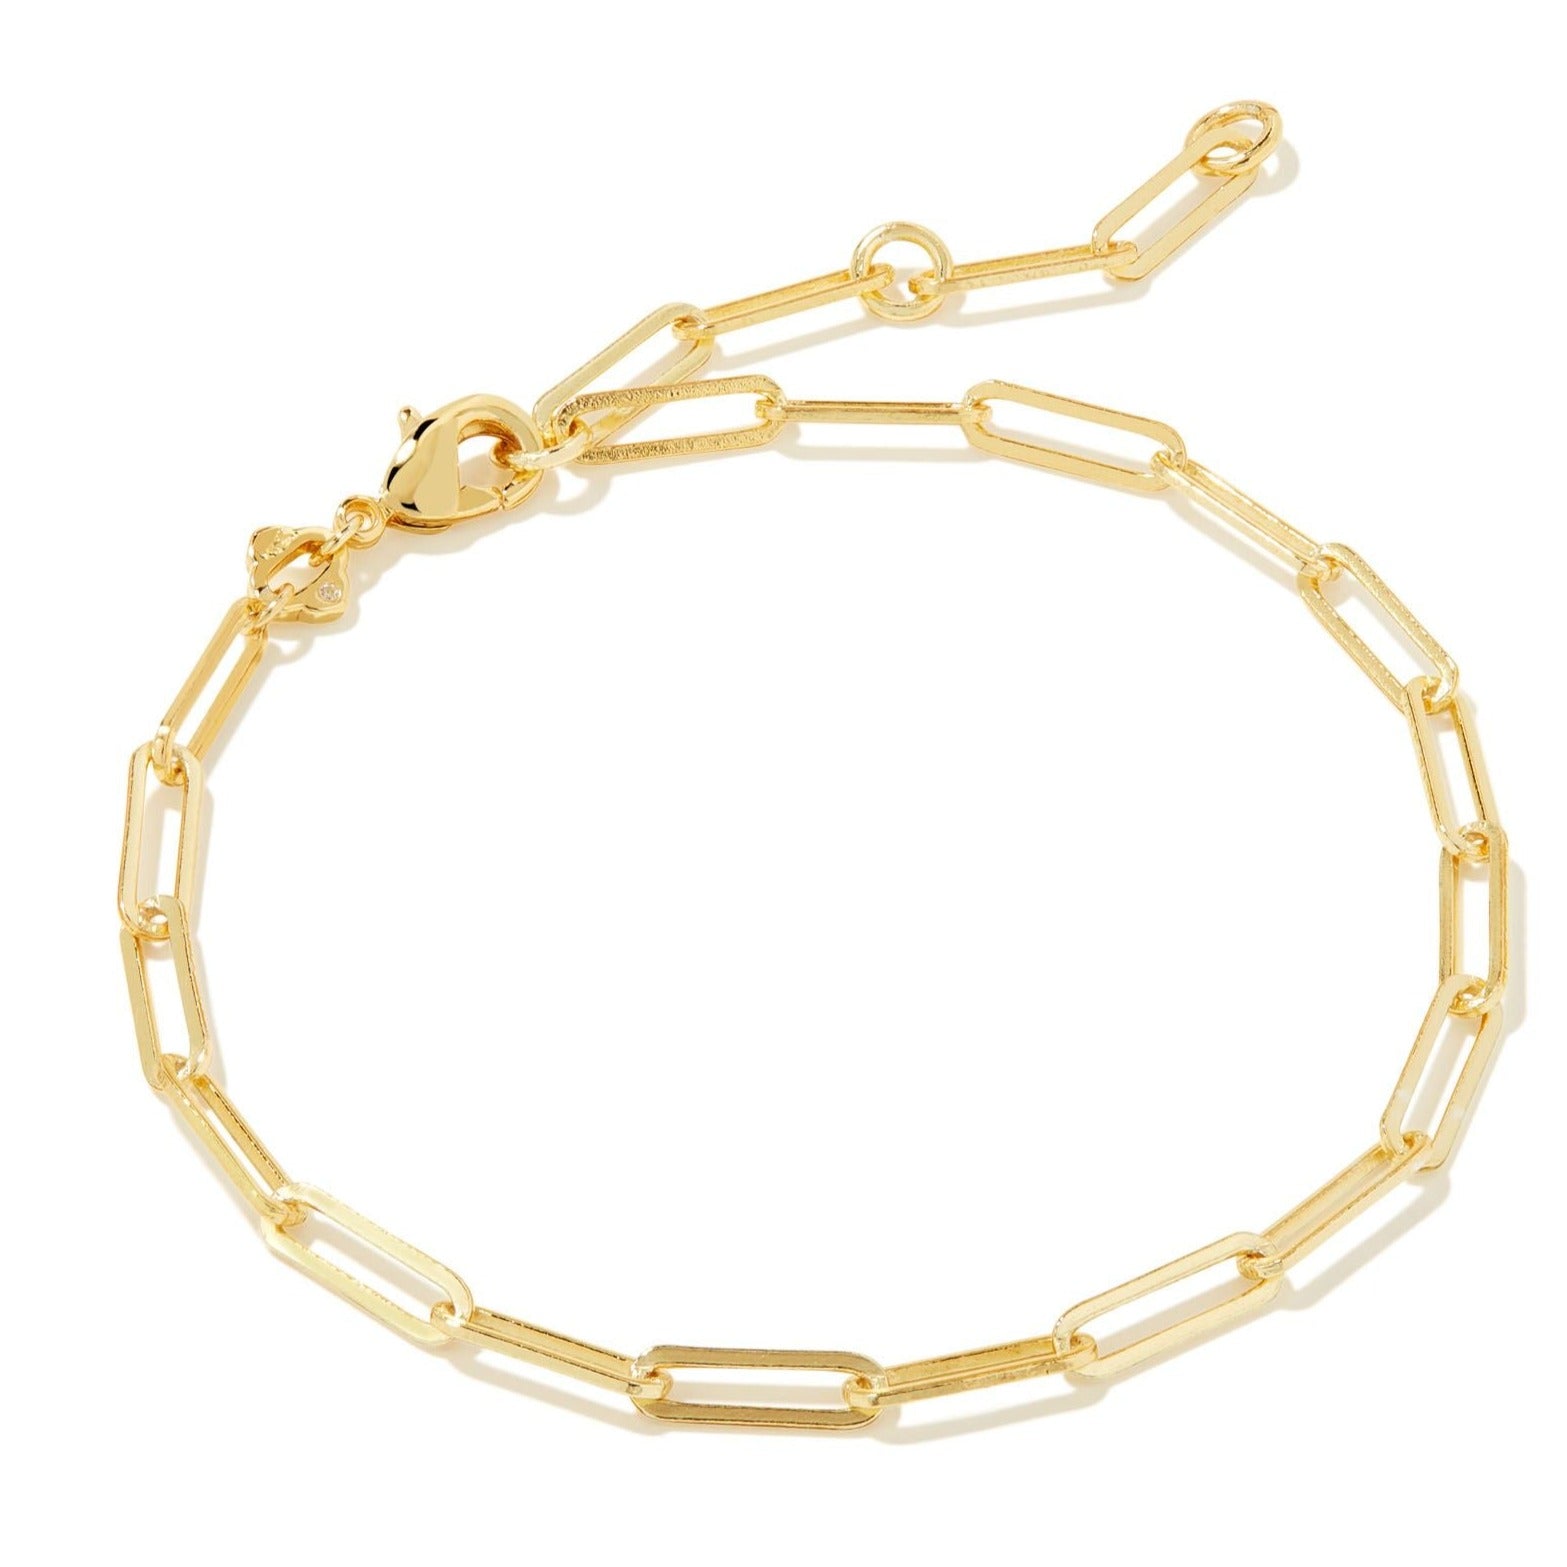 Kendra Scott | Courtney Gold Paperclip Bracelet - Giddy Up Glamour Boutique